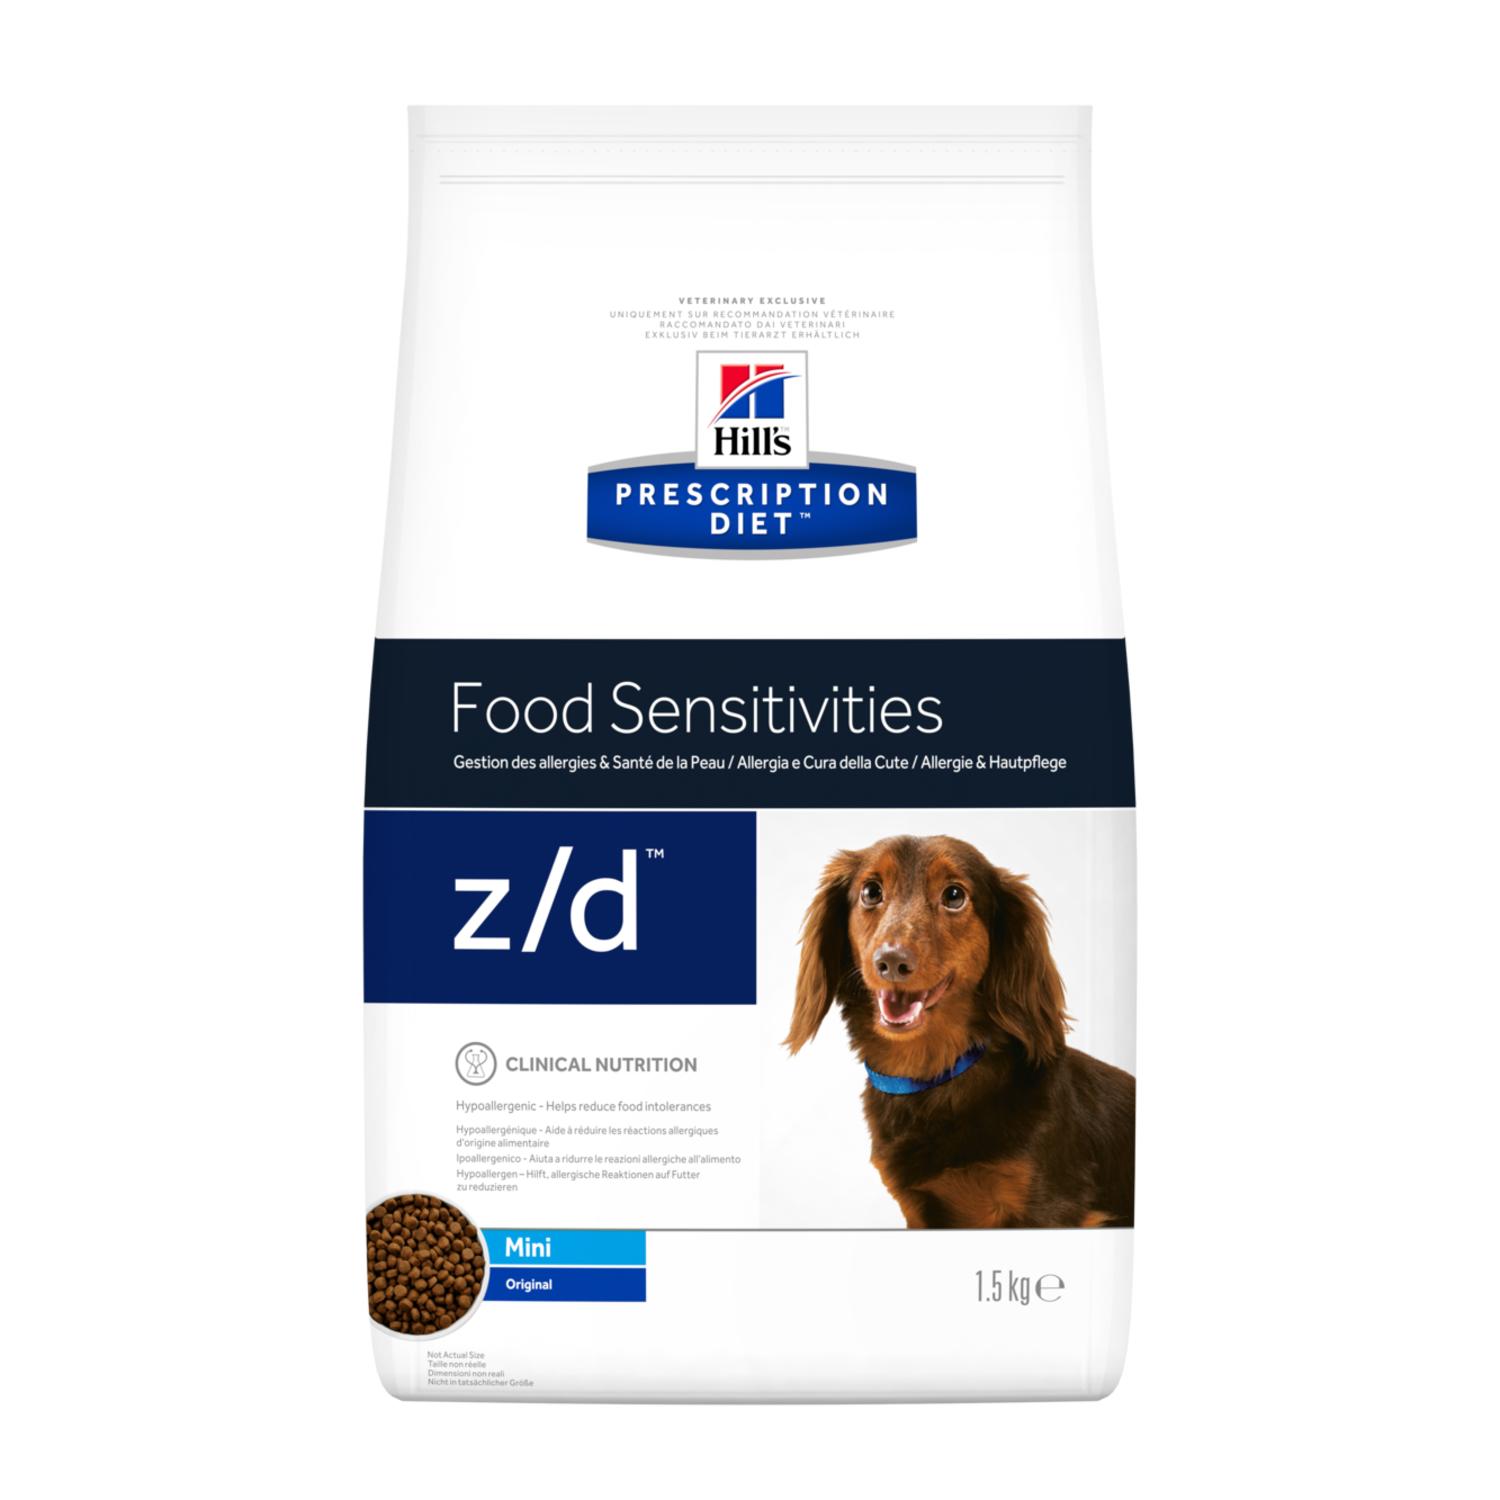 (НЕТ В НАЛИЧИИ) Сухой диетический гипоаллеренный корм для собак Hill's Prescription Diet z/d Mini при пищевой аллергии